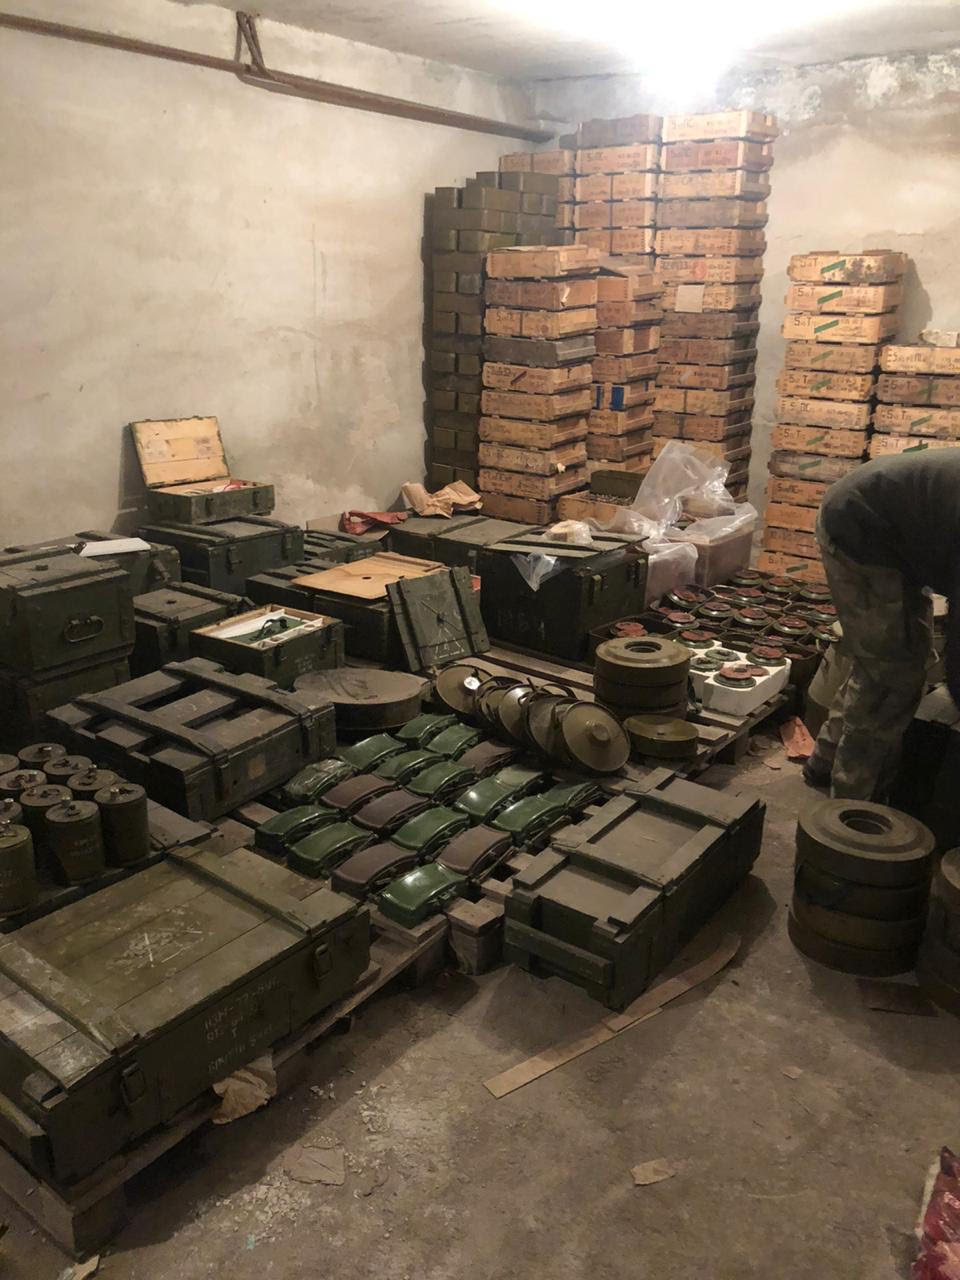 Правоохоронці виявили масштабний схрон військової техніки та озброєння на сході України